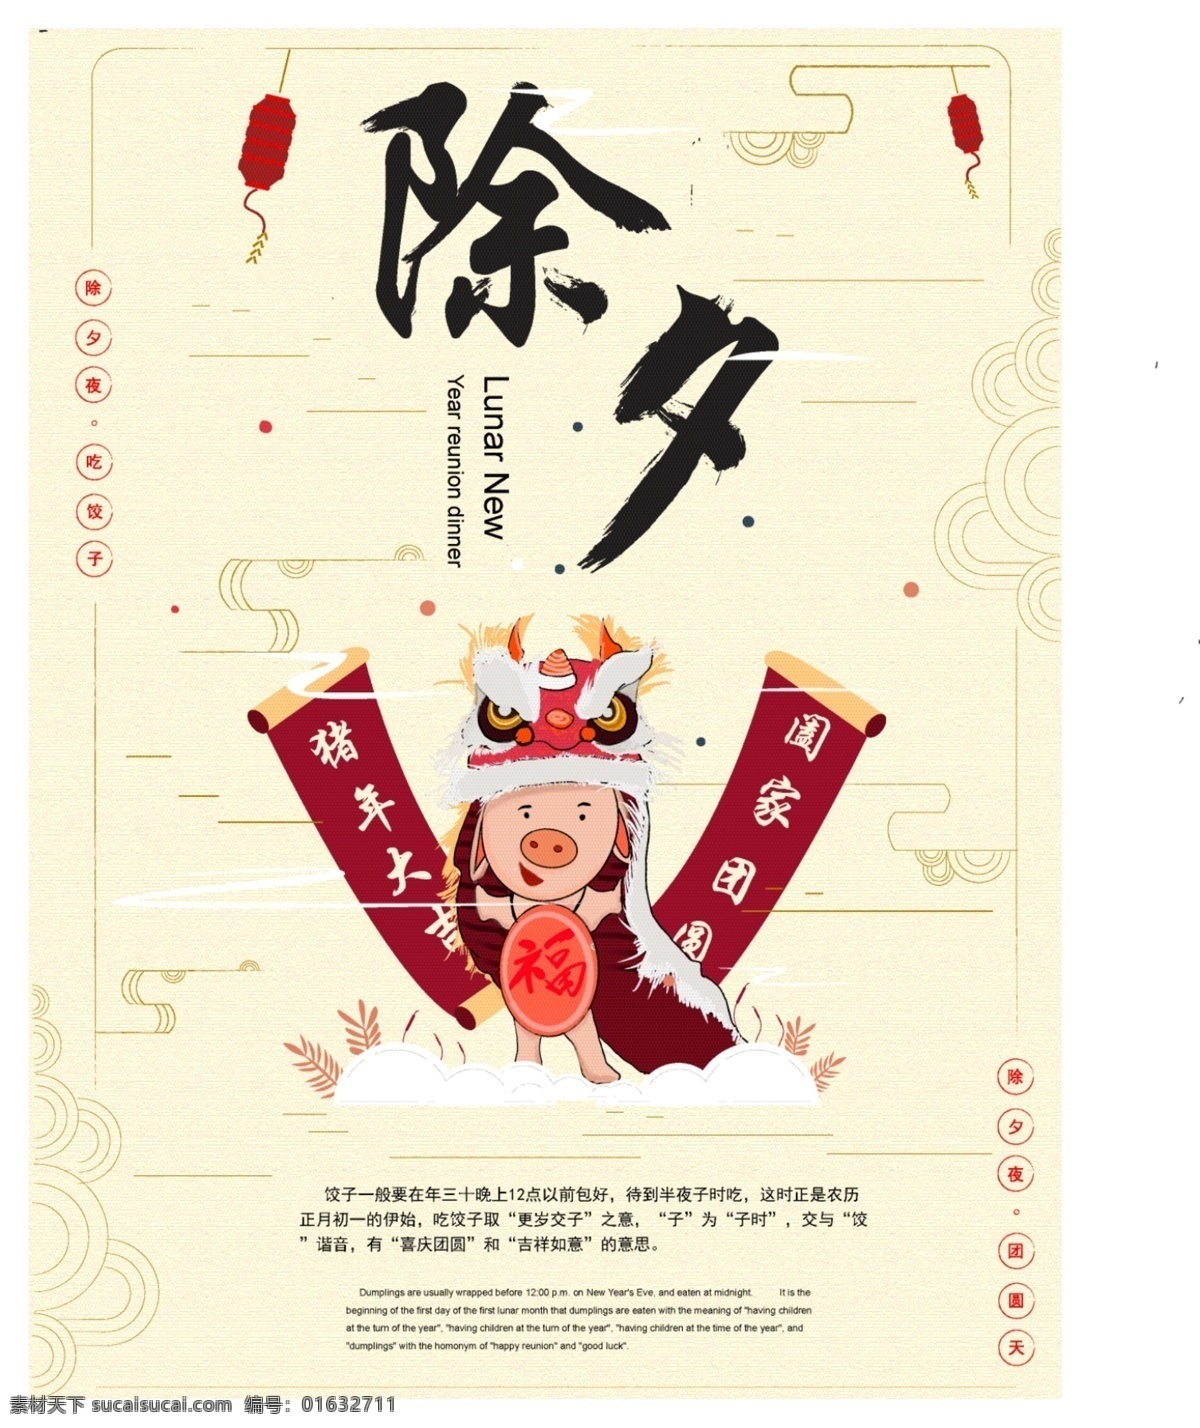 原创 插画 猪年 舞狮 除夕 新年 快乐 海报 新年快乐 节日 年味